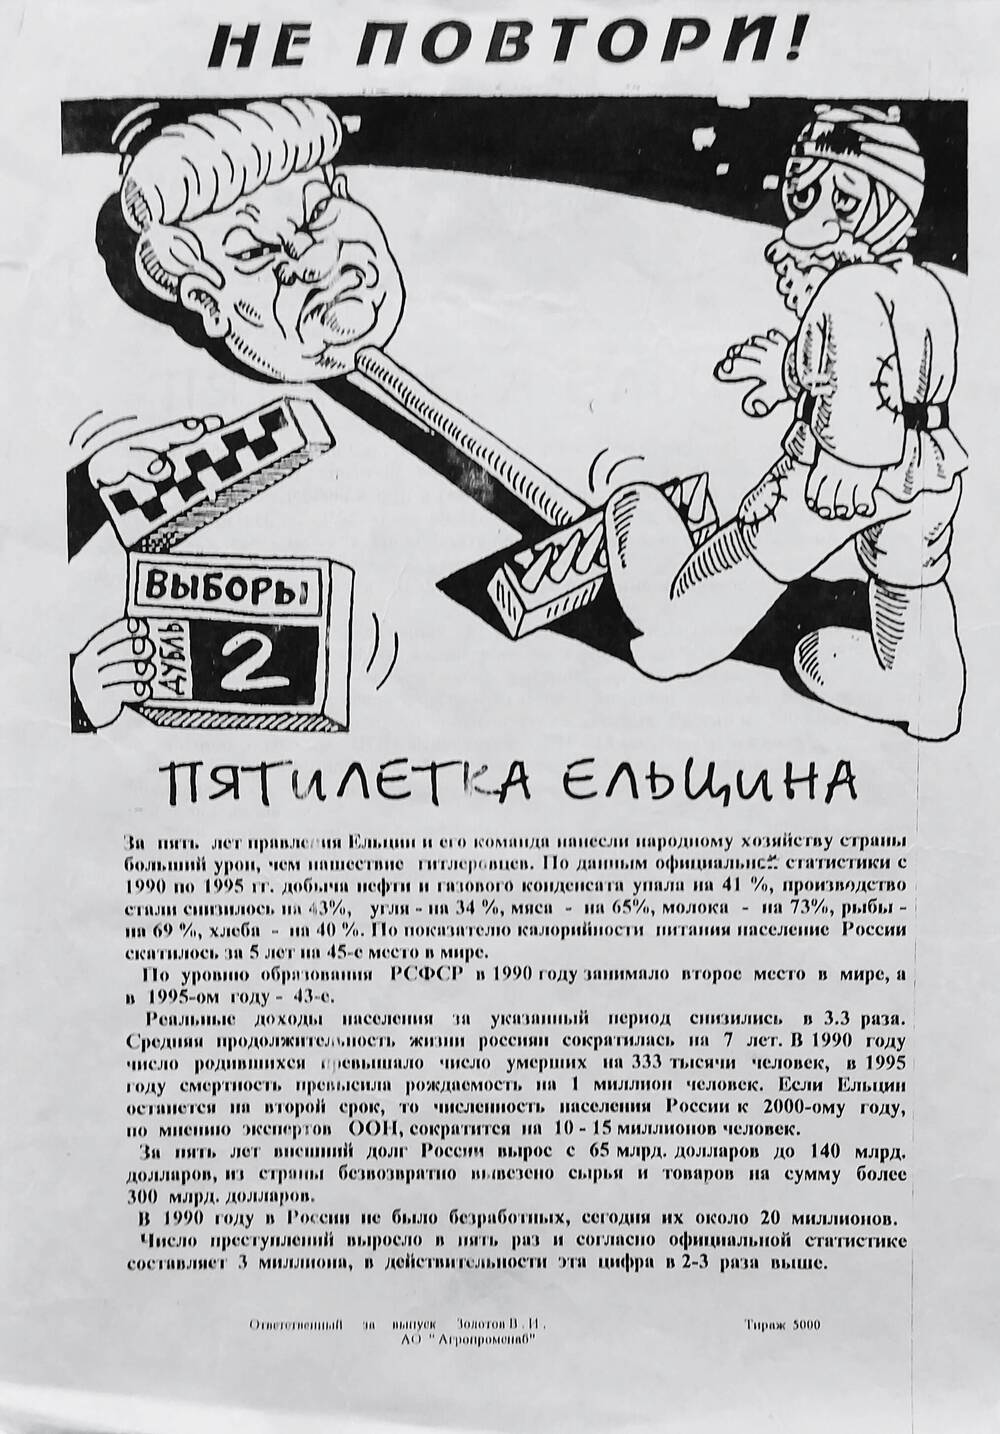 Листовка агитационная - карикатура Не повтори!. Издательство АО Агропромснаб, 1990 г.